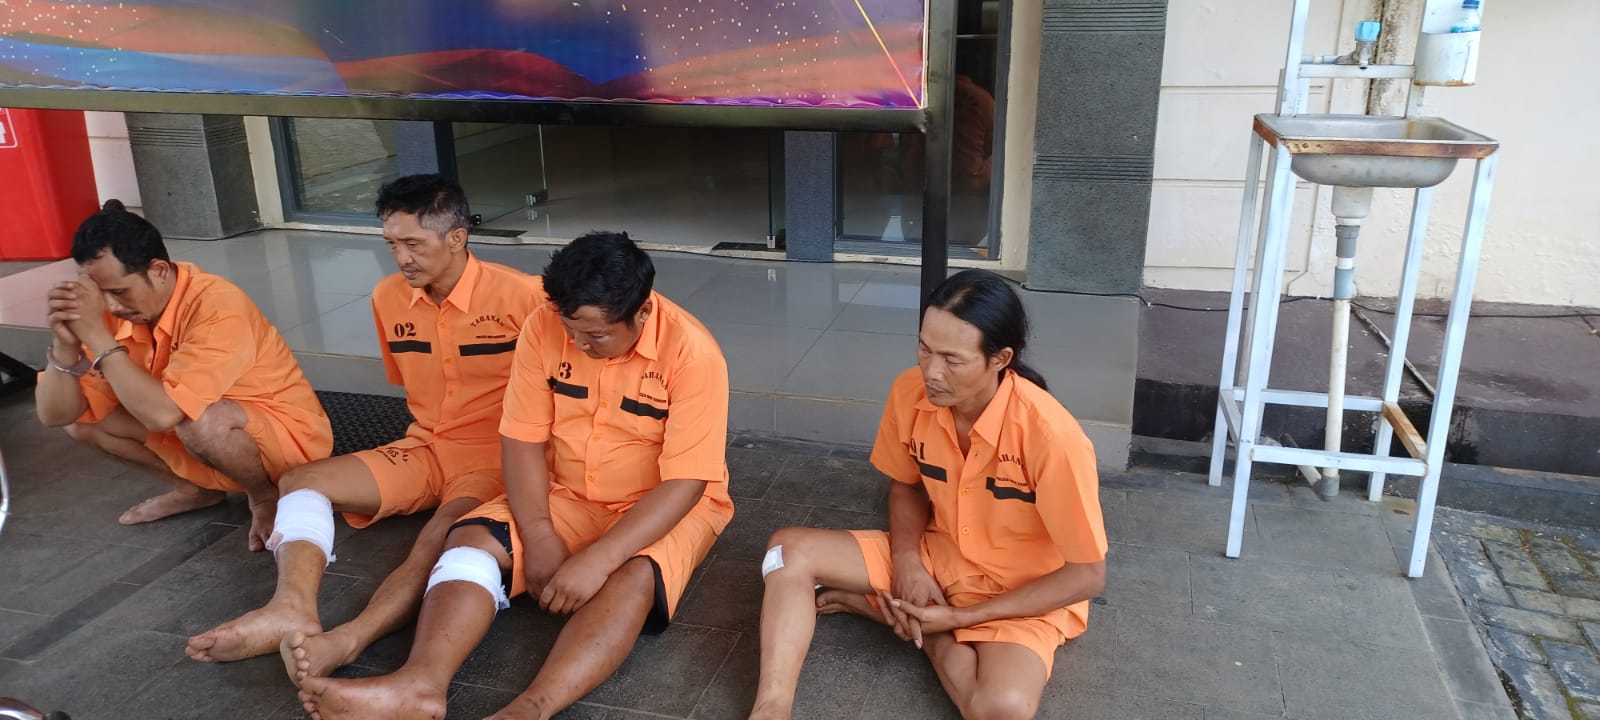 3 Bandit Spesialis Modus Sembelih Ternak Dilumpuhkan Polisi